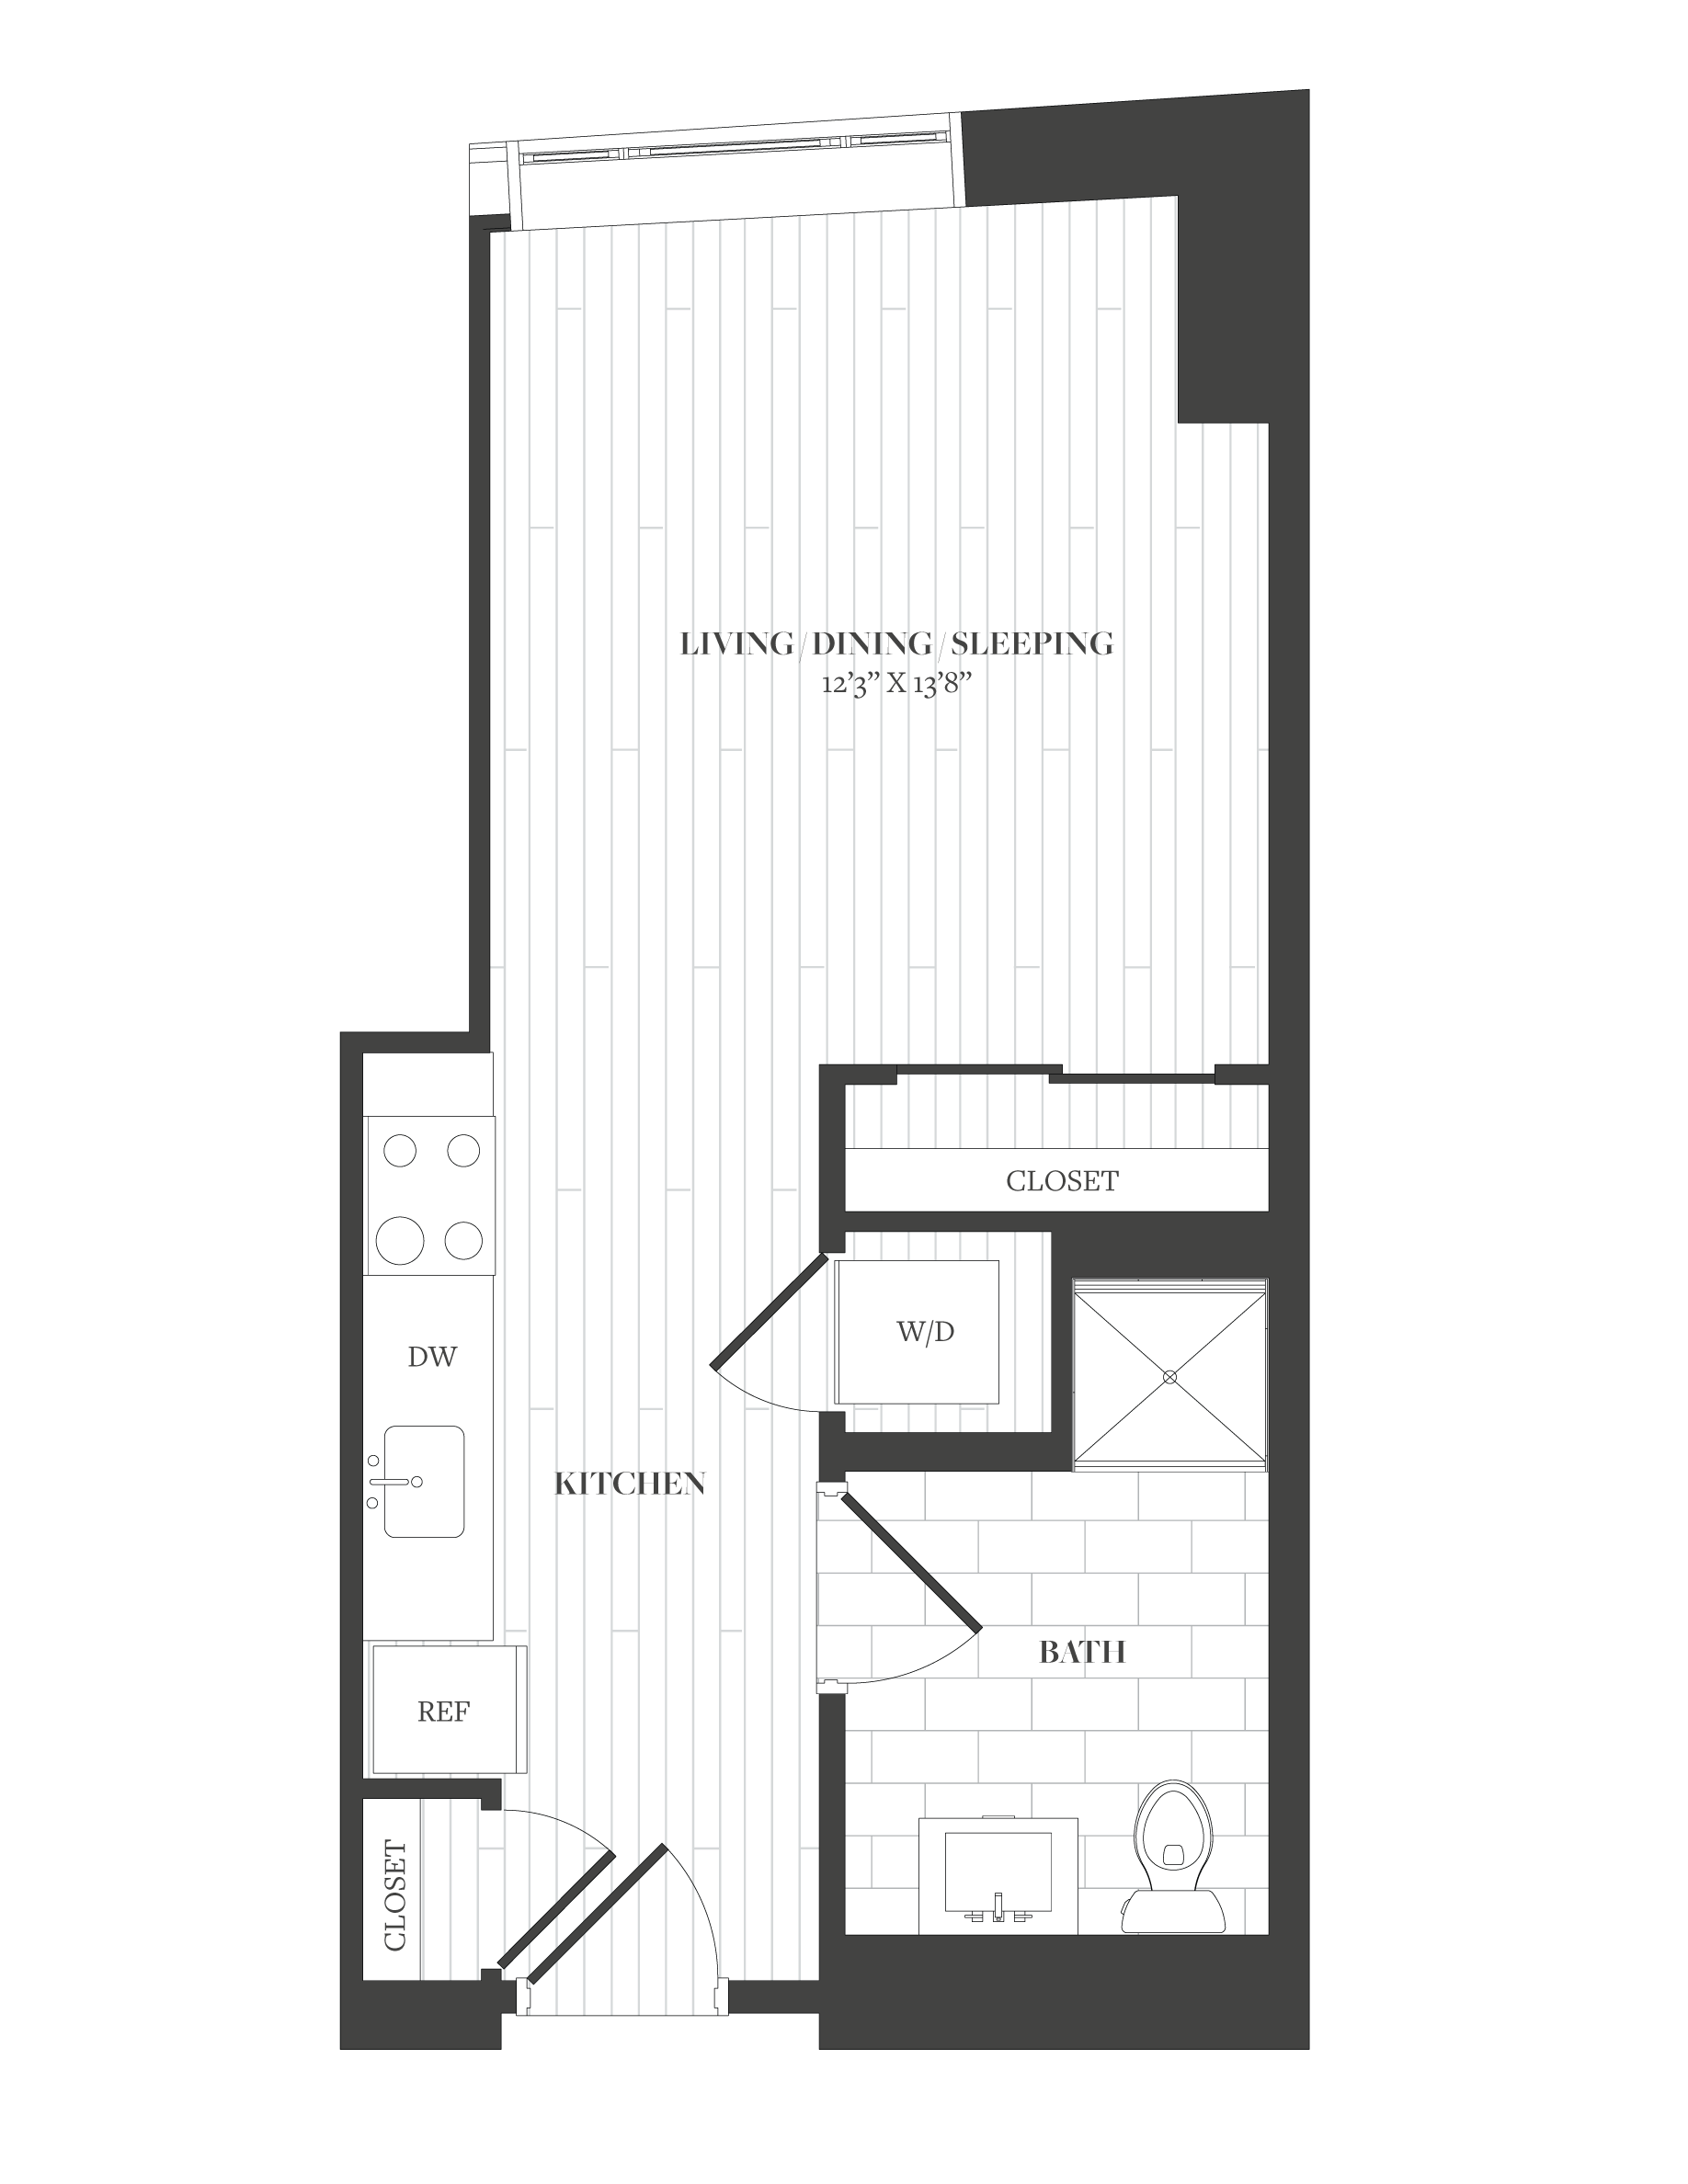 Floorplan image of unit 213